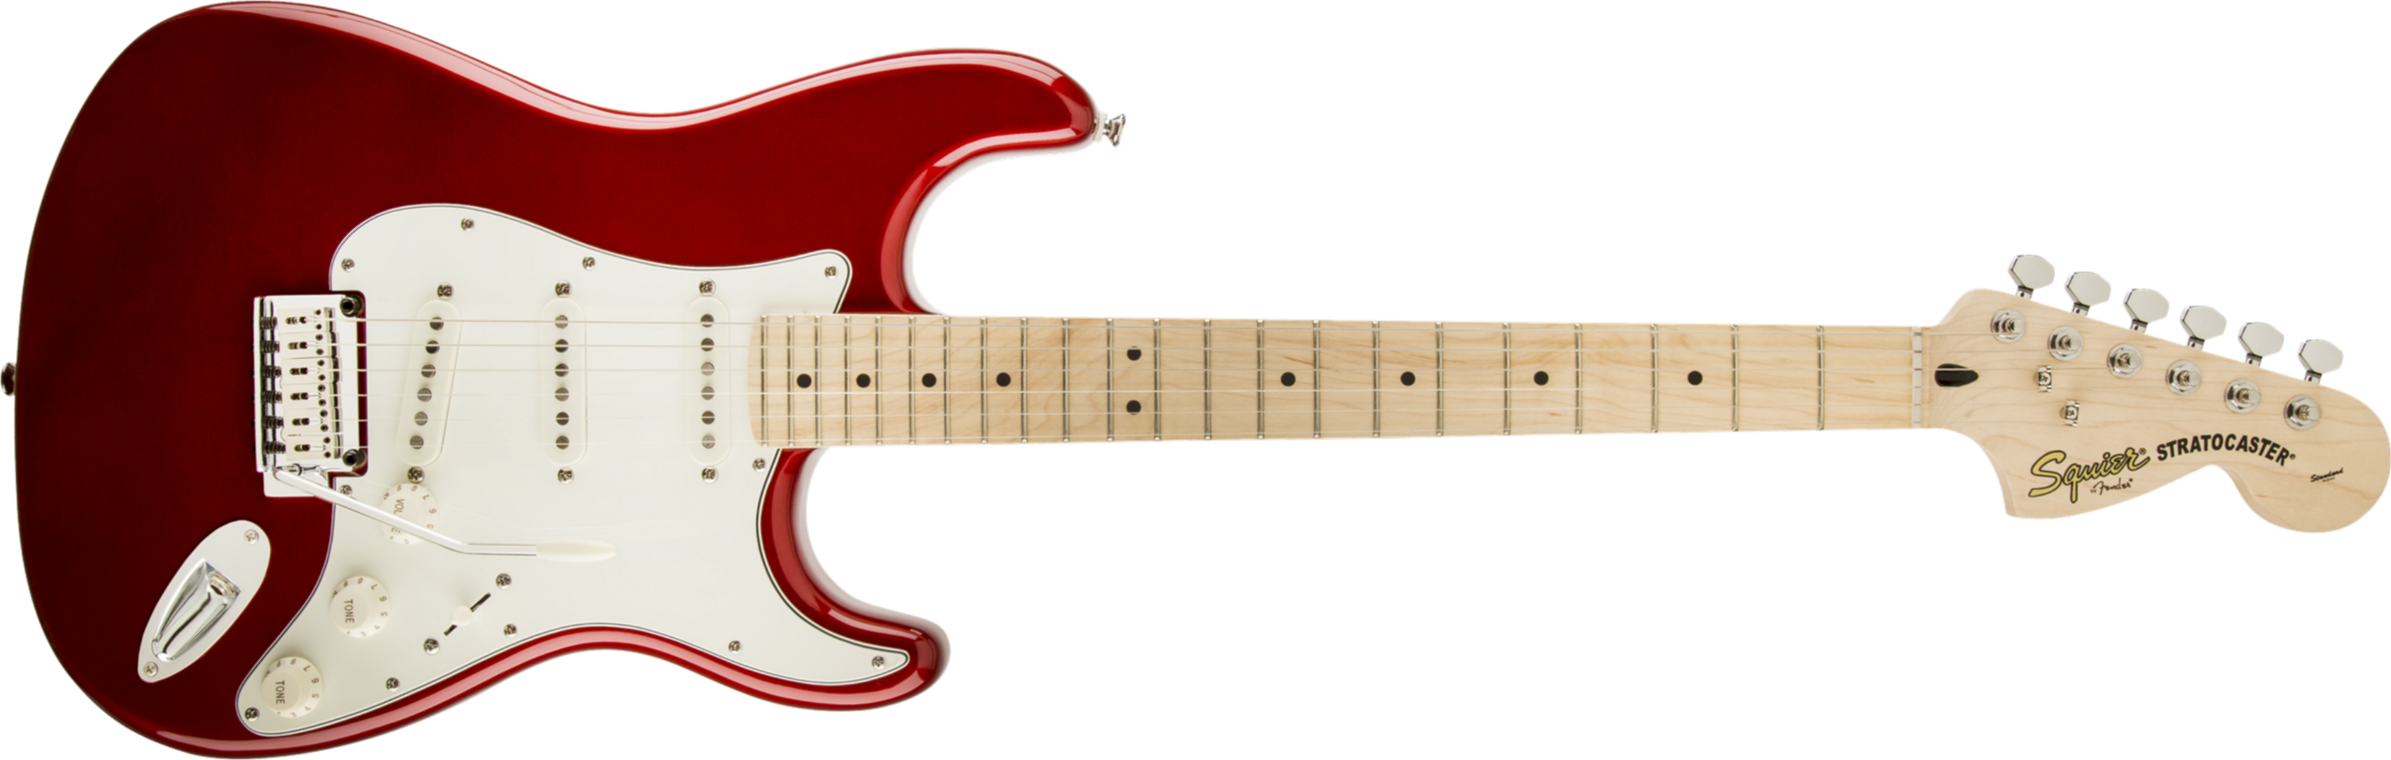 Squier Strat Standard Mn - Candy Apple Red - Elektrische gitaar in Str-vorm - Main picture